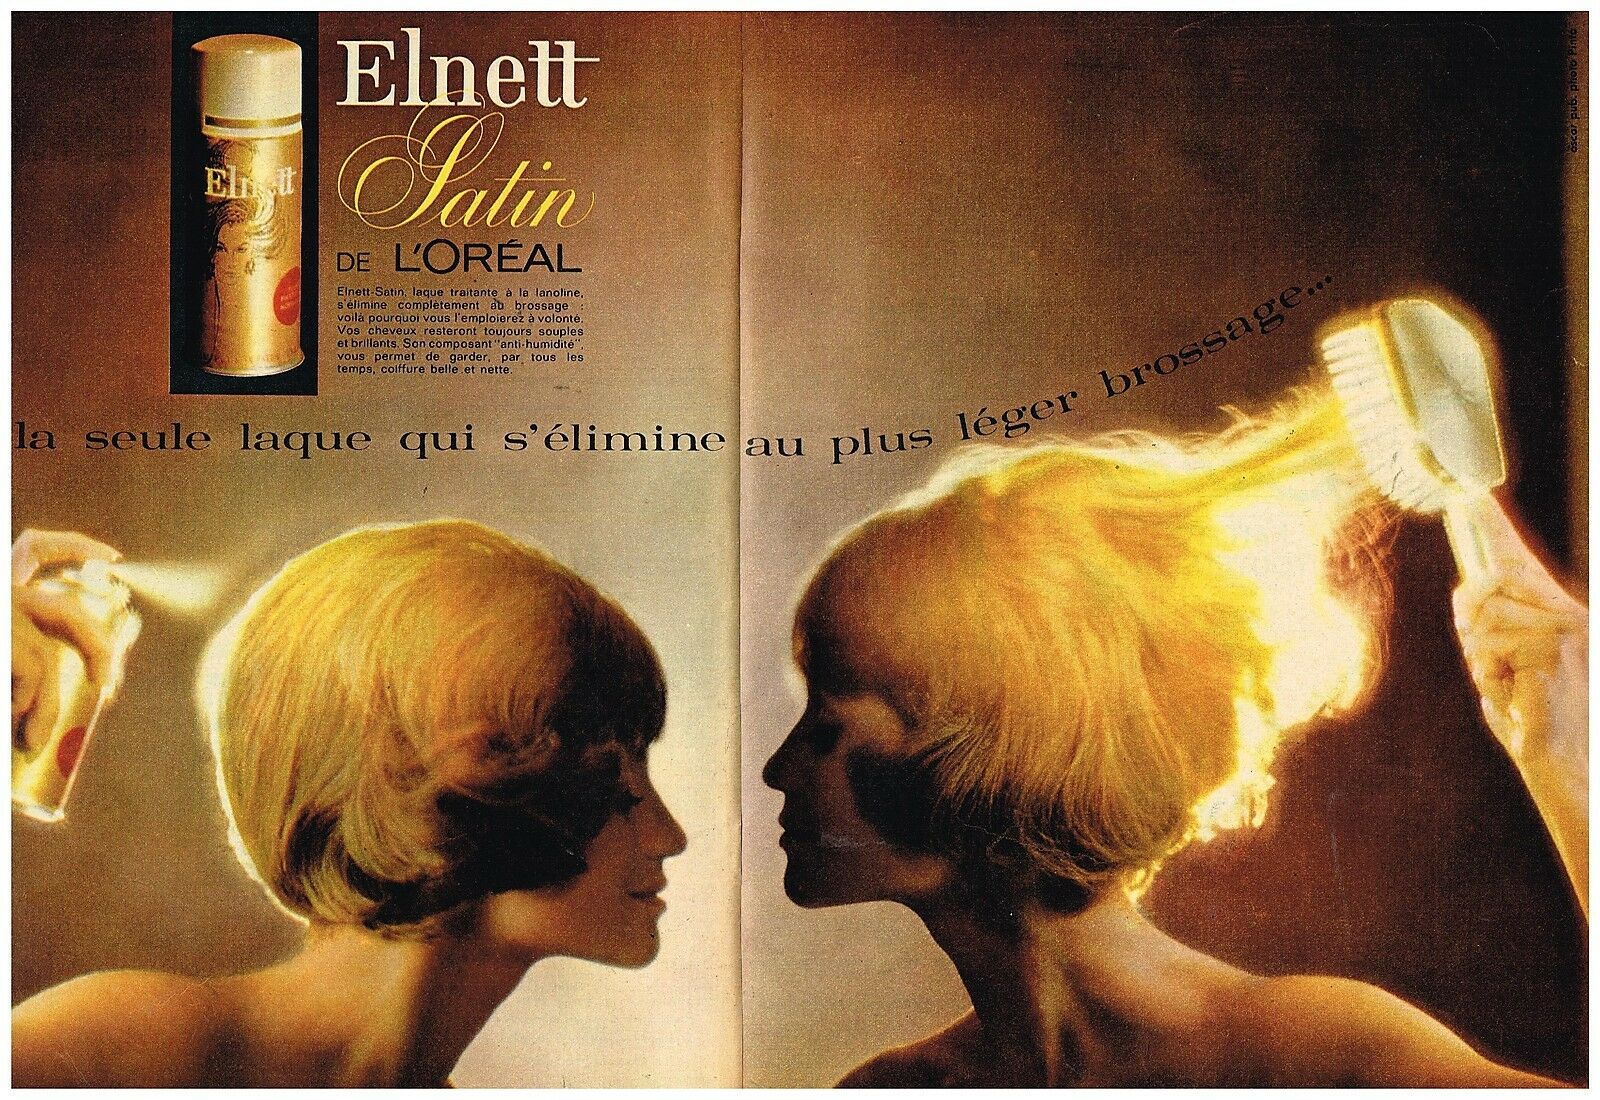 1964 Laque cheveux Elnett Satin de L'Oreal